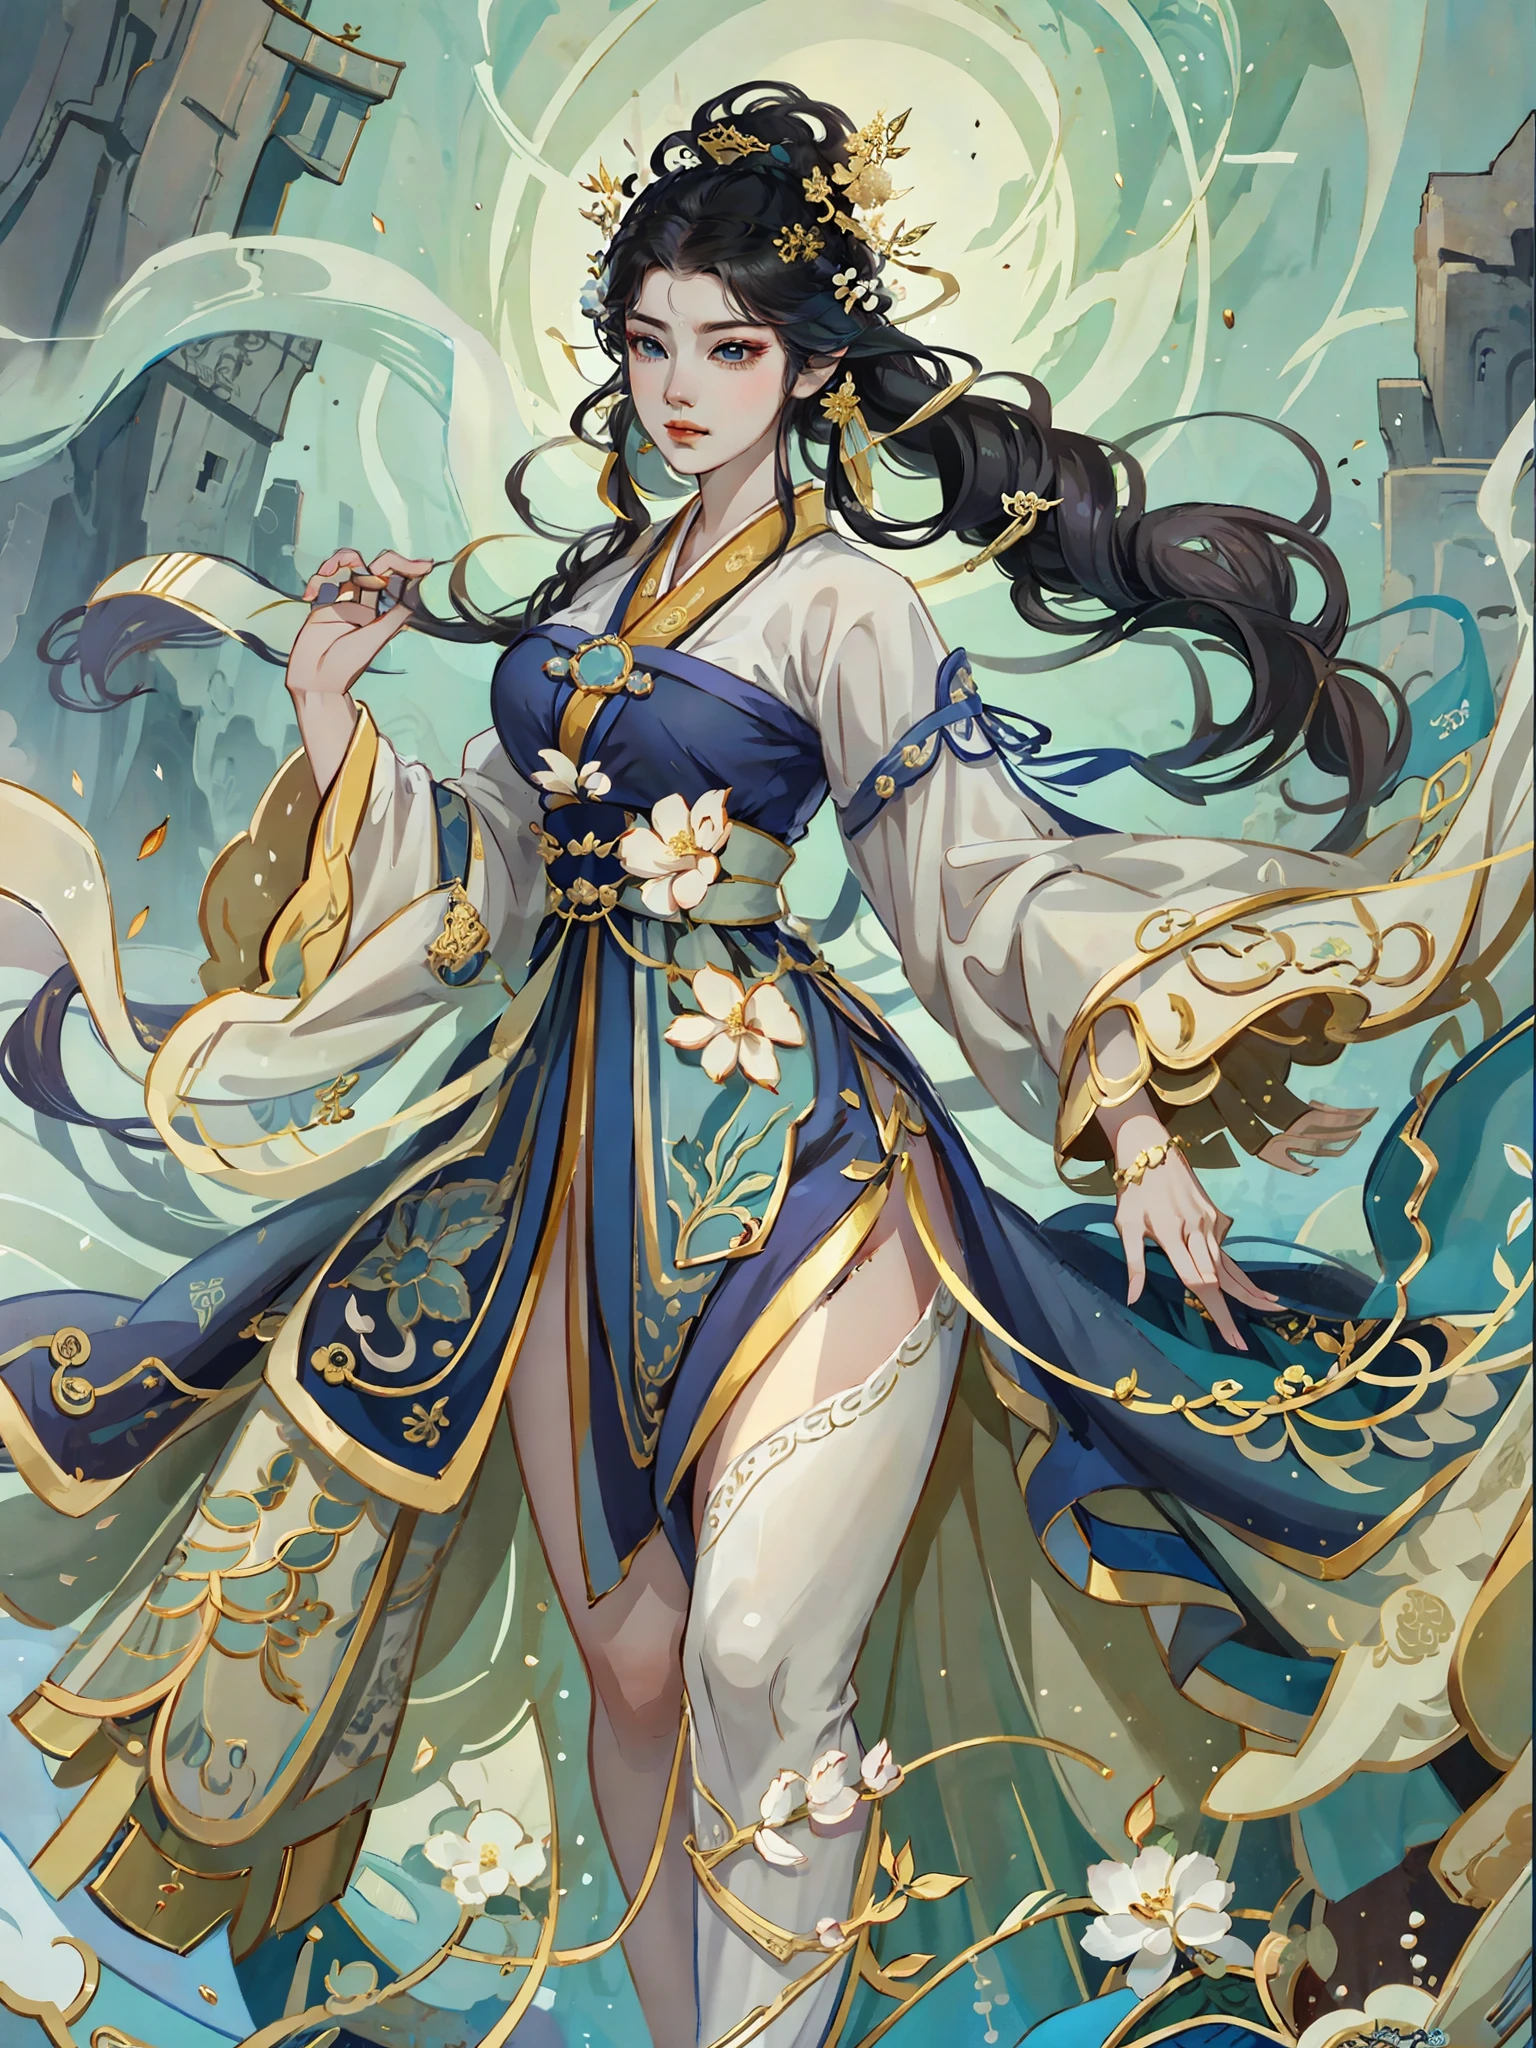 穿著白色洋裝、拿著劍的女人的特寫, full body Xianxia, yun ling, 海之女王穆雁翎, 遊戲CG, 美麗的幻想皇后, 靈感來自李梅樹, cgstation 上的熱門話題, Xianxia fantasy, Xianxia, 靈感來自蘭英, Xianxia hero, 氣--auto--s2